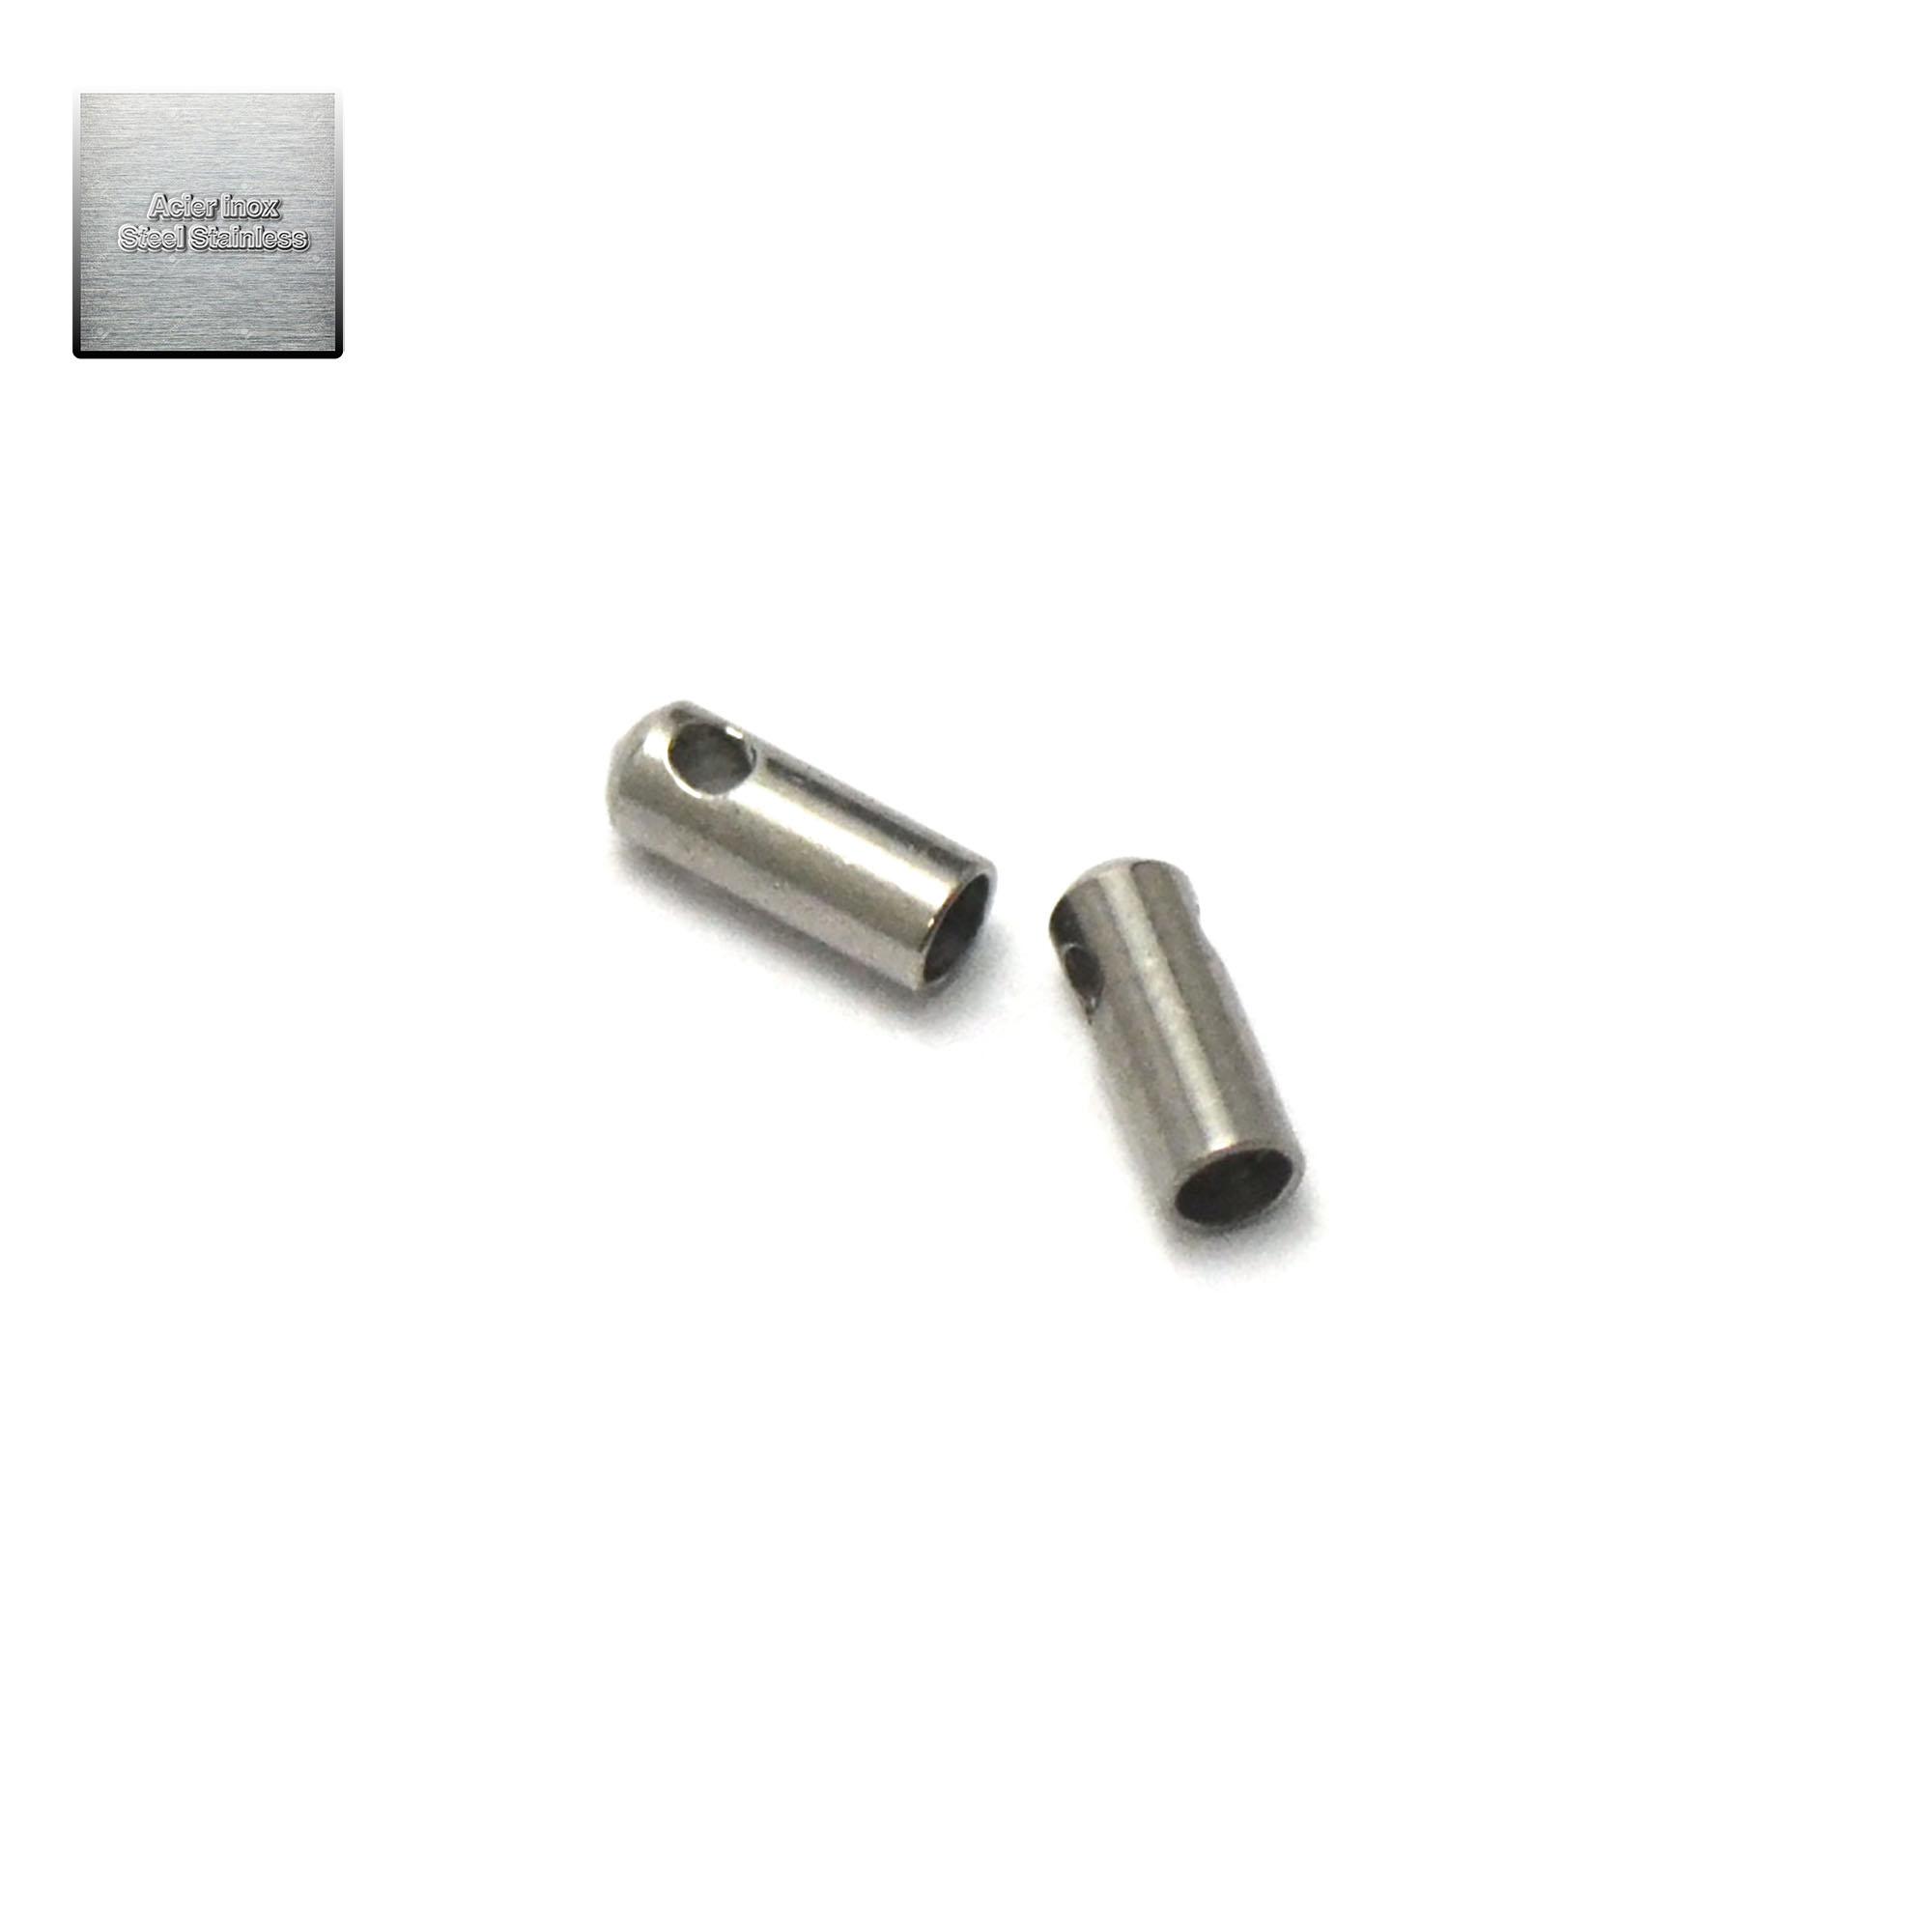 Acier inox: 20 embout tube 2 mm, steel stainless